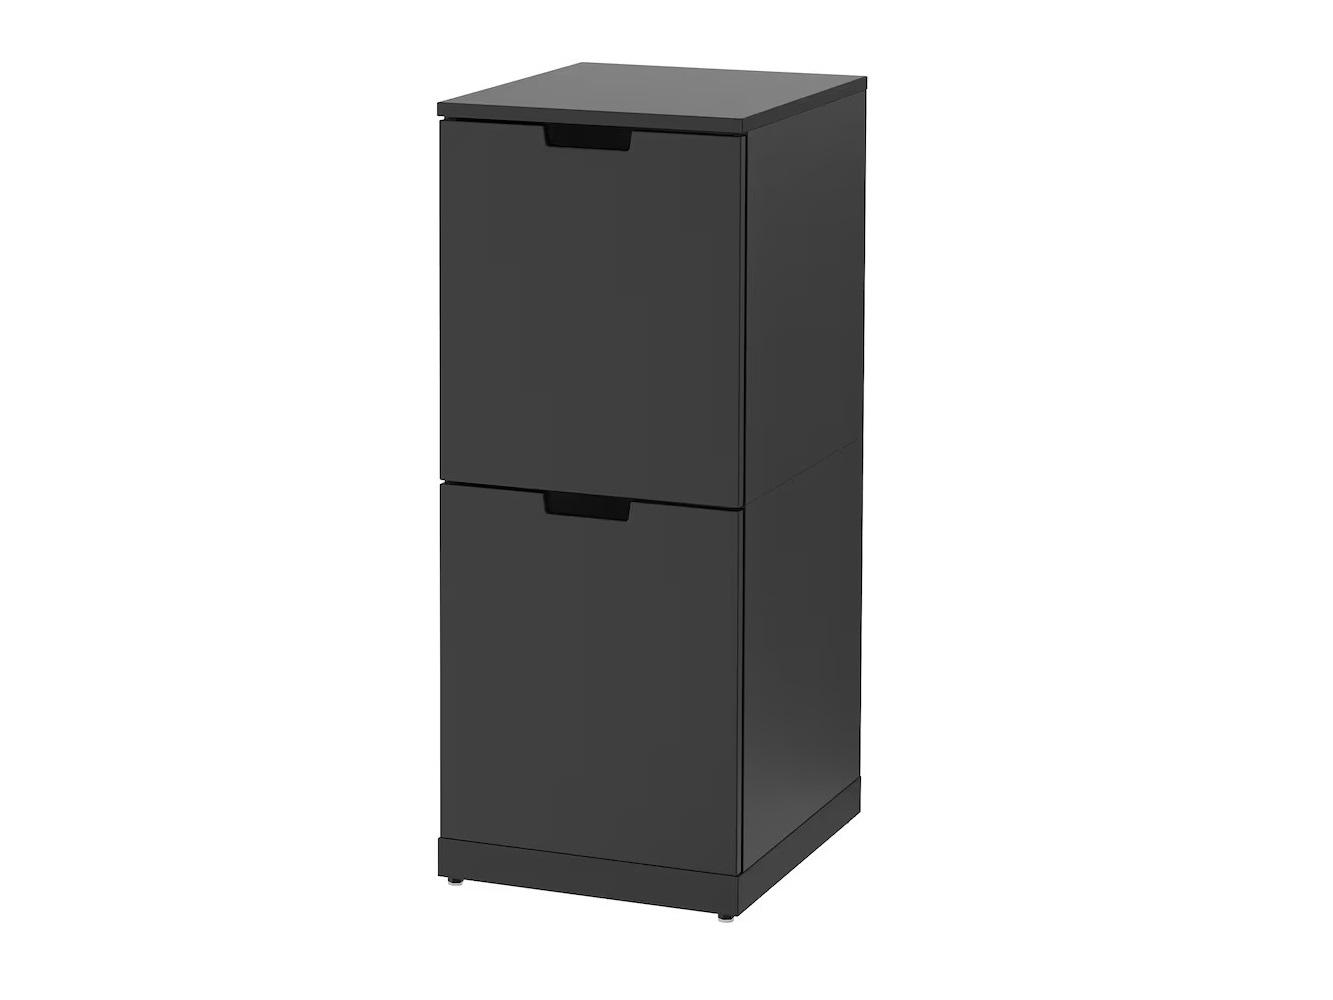 Комод Нордли 35 black ИКЕА (IKEA) изображение товара